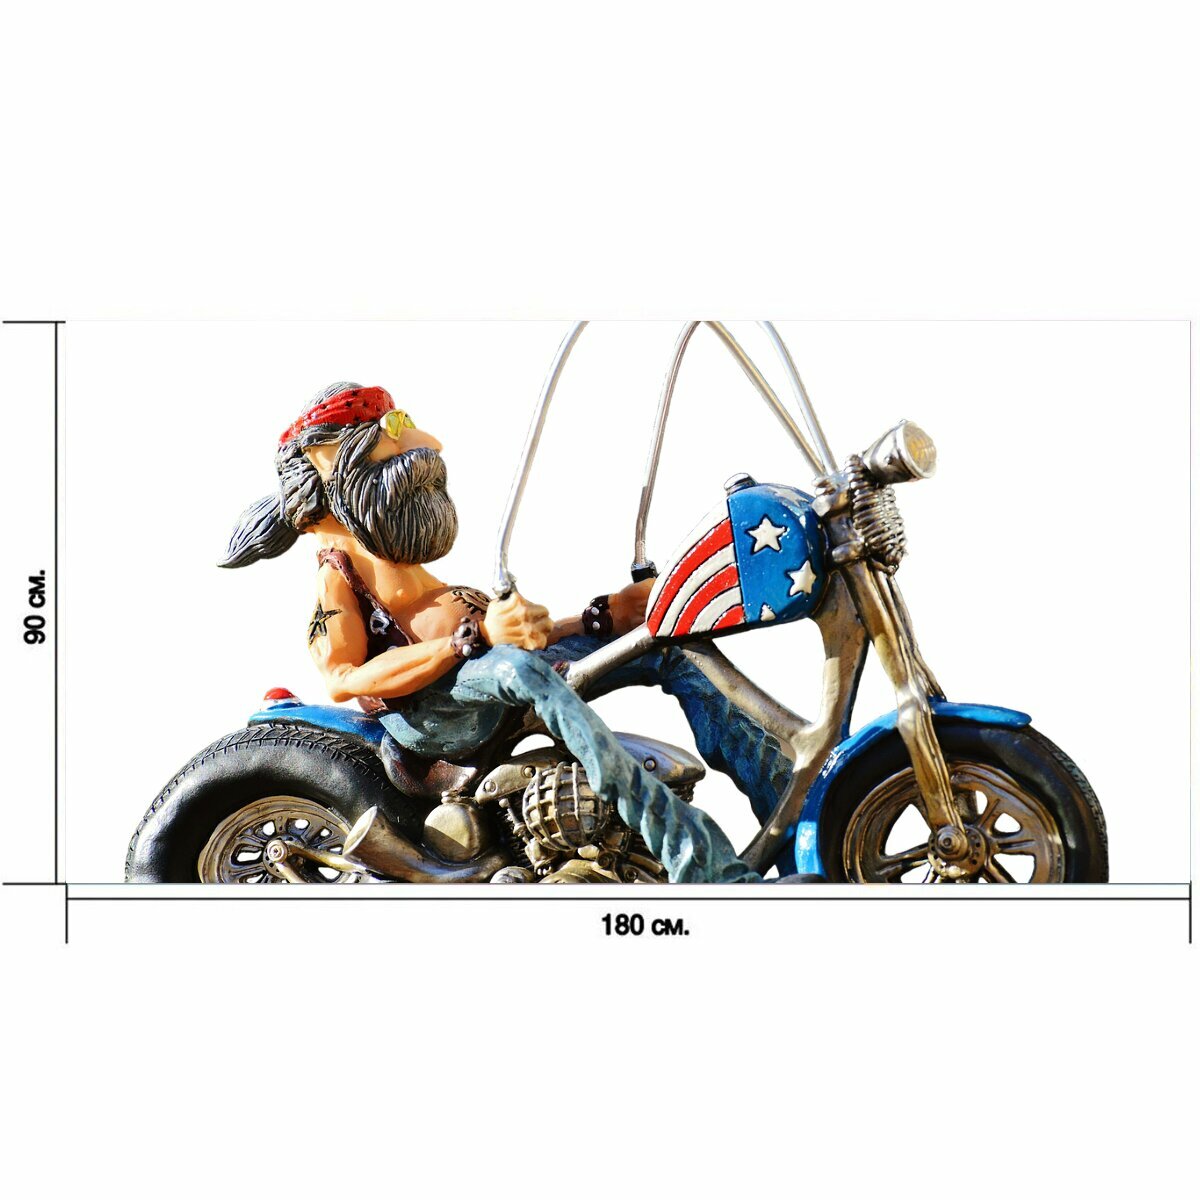 Большой постер "Байкер, велосипед, татуированный" 180 x 90 см. для интерьера